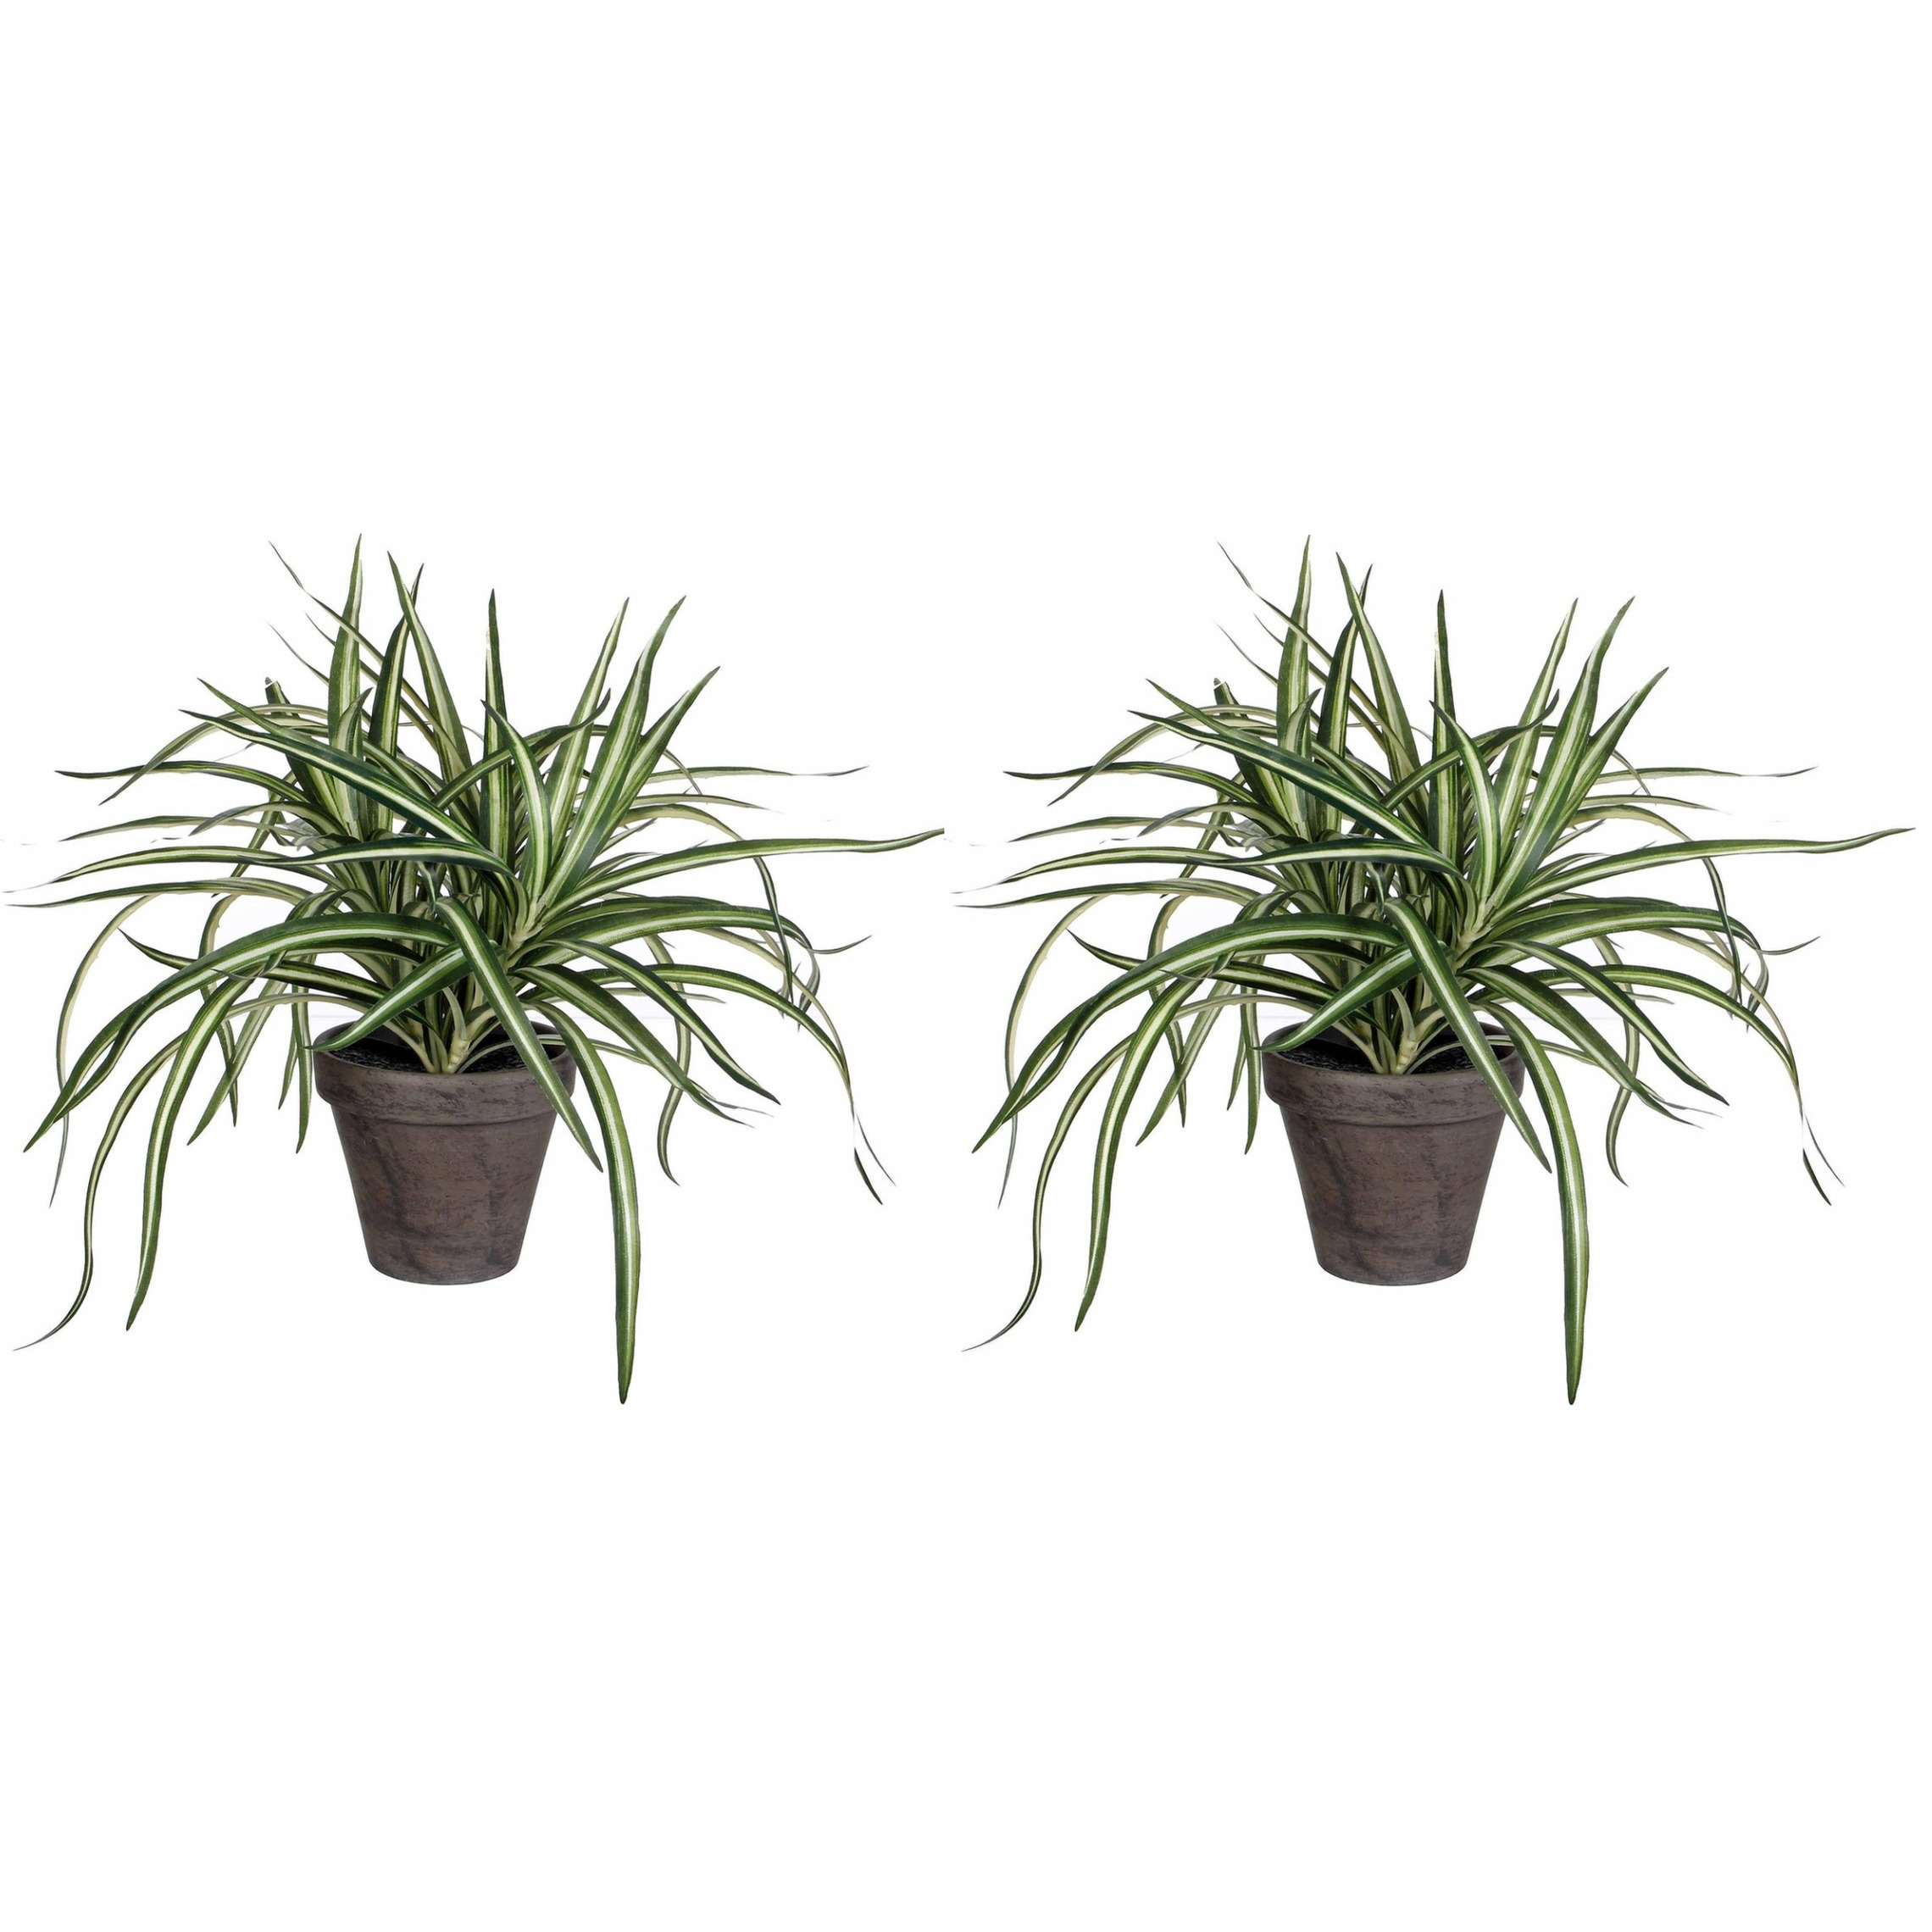 2x stuks dracaena kunstplanten groen in grijze pot H34 cm x D40 cm